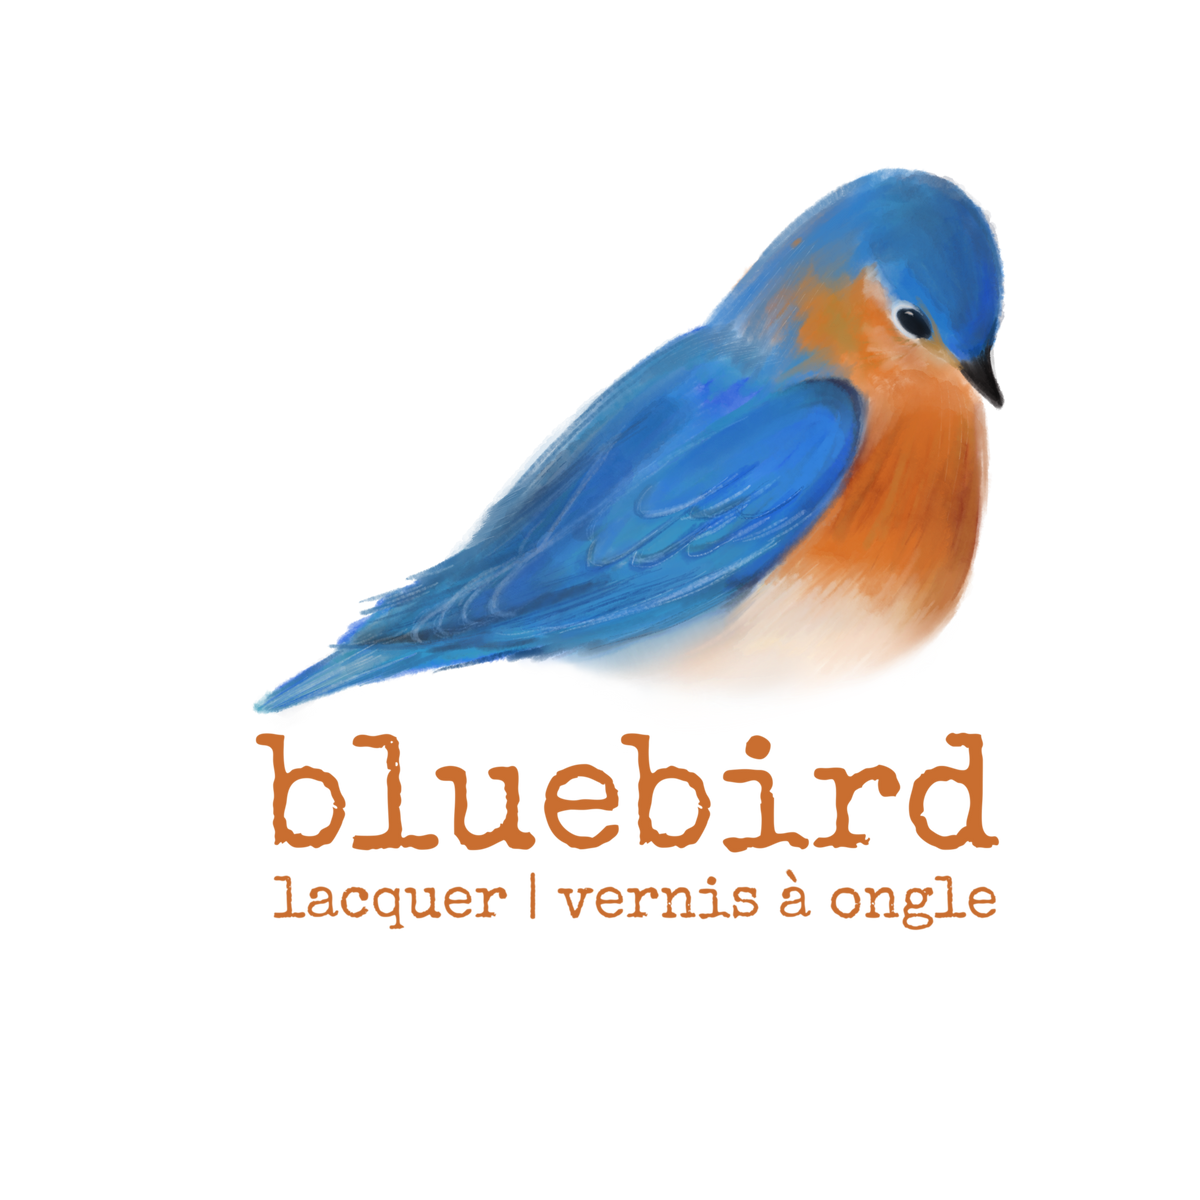 Home – Bluebird Lacquer